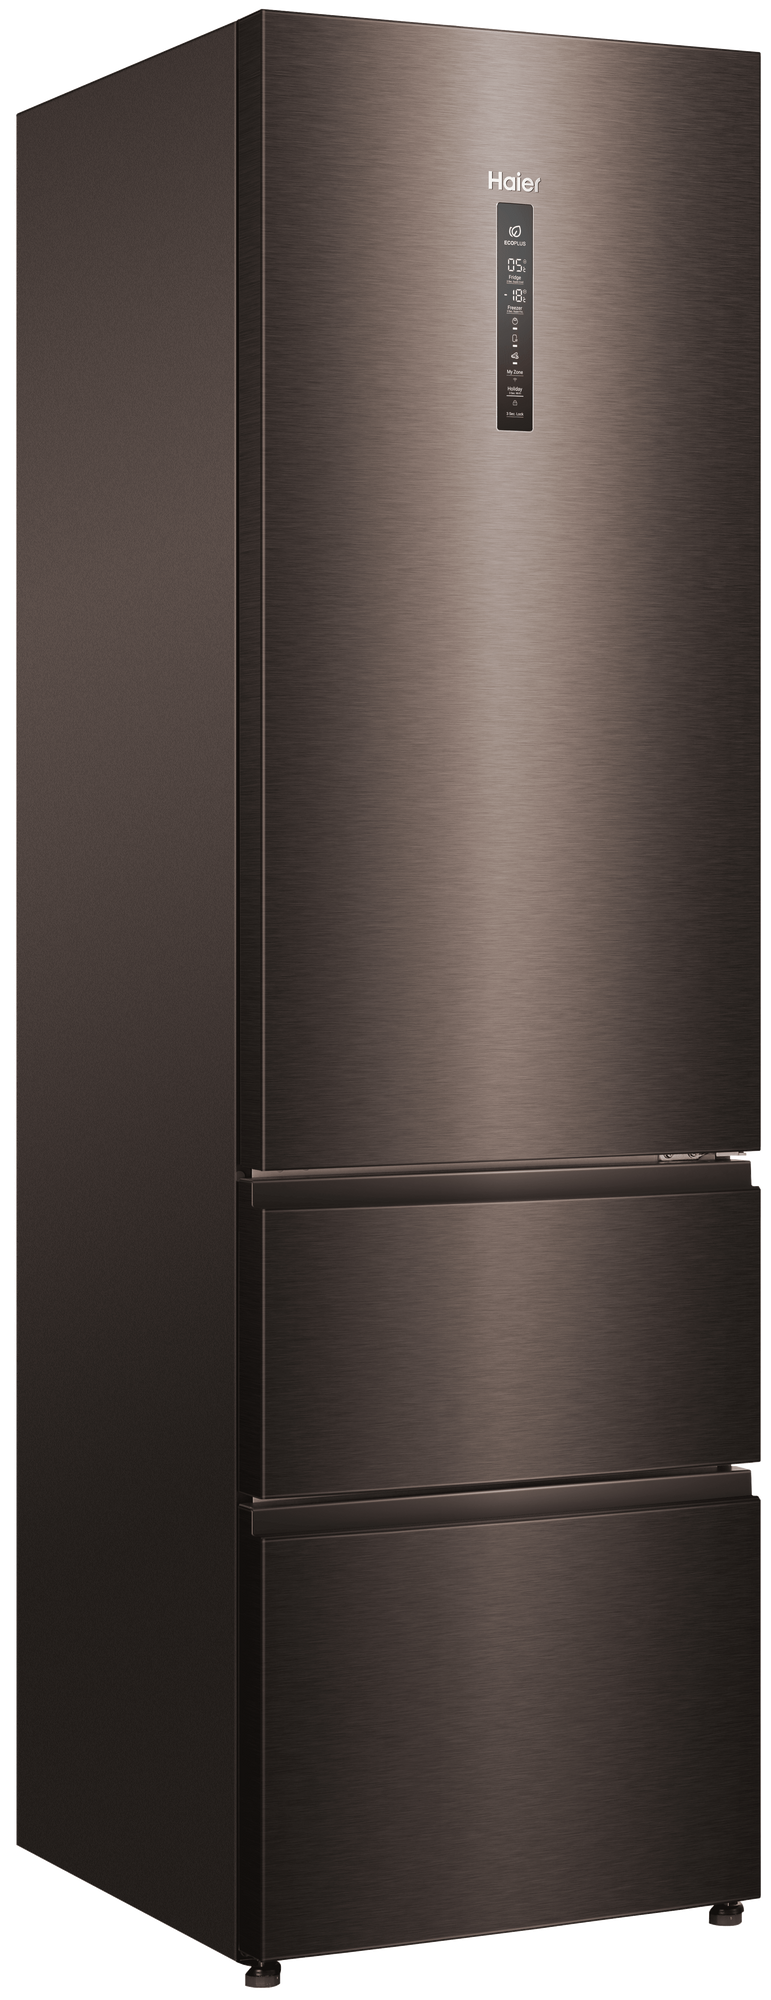 Холодильник Haier A4F739CDBGU1